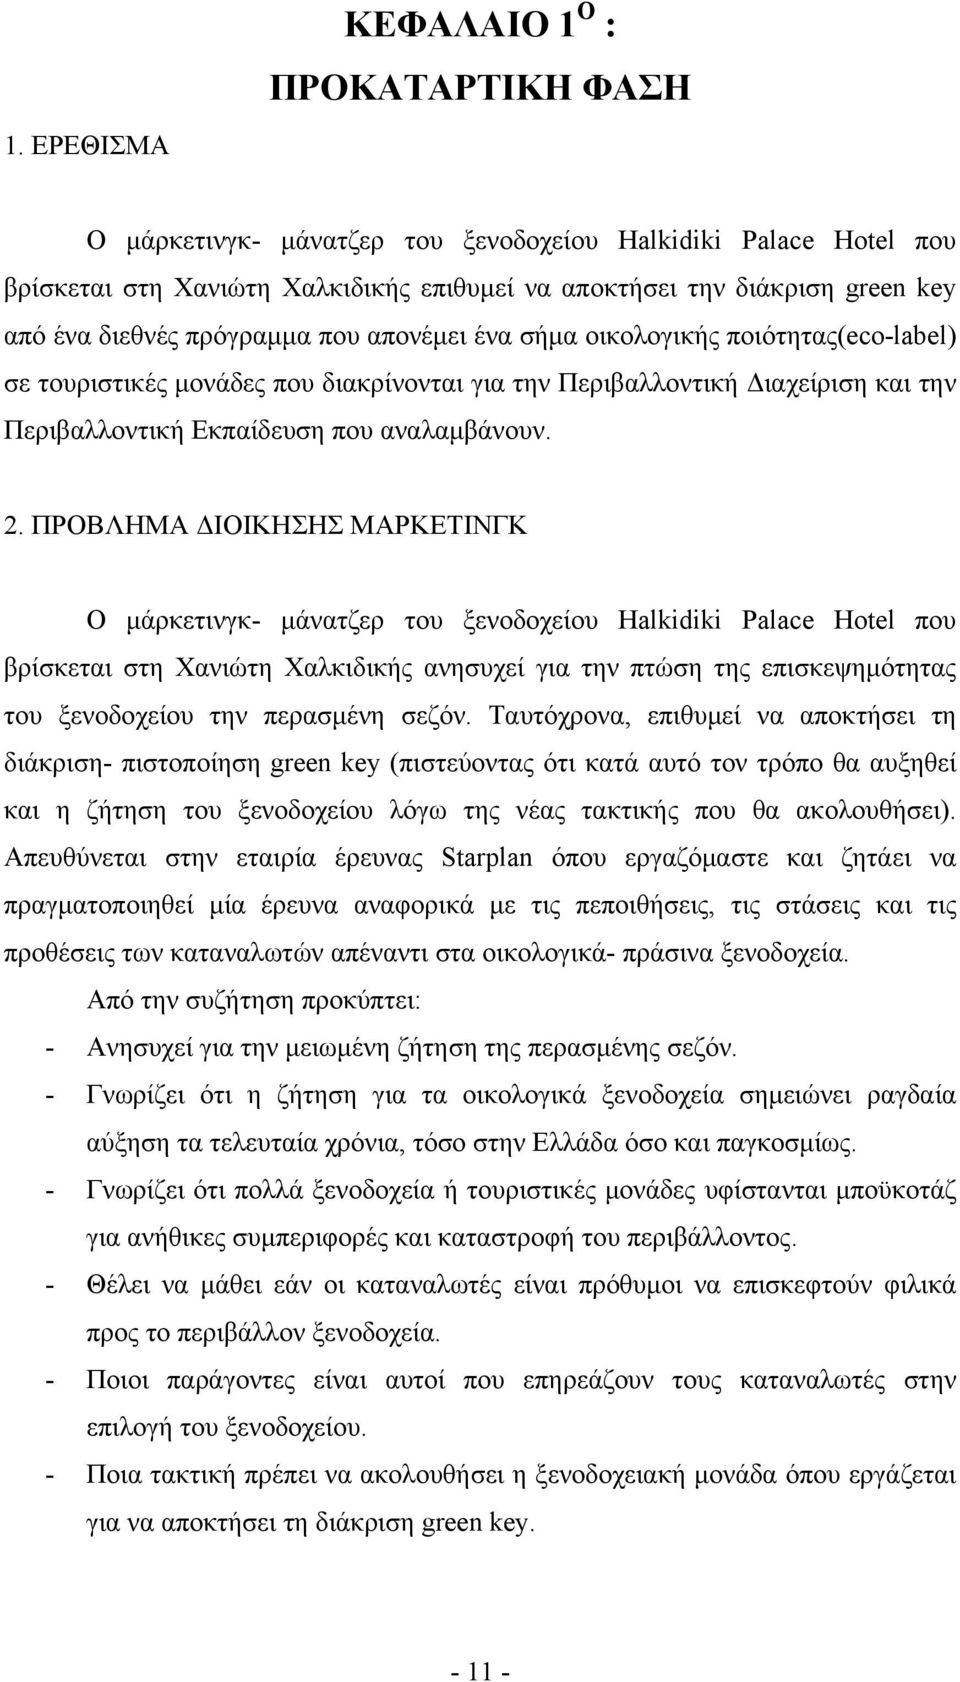 2. ΠΡΟΒΛΗΜΑ ΔΙΟΙΚΗΣΗΣ ΜΑΡΚΕΤΙΝΓΚ Ο μάρκετινγκ- μάνατζερ του ξενοδοχείου Halkidiki Palace Hotel που βρίσκεται στη Χανιώτη Χαλκιδικής ανησυχεί για την πτώση της επισκεψημότητας του ξενοδοχείου την